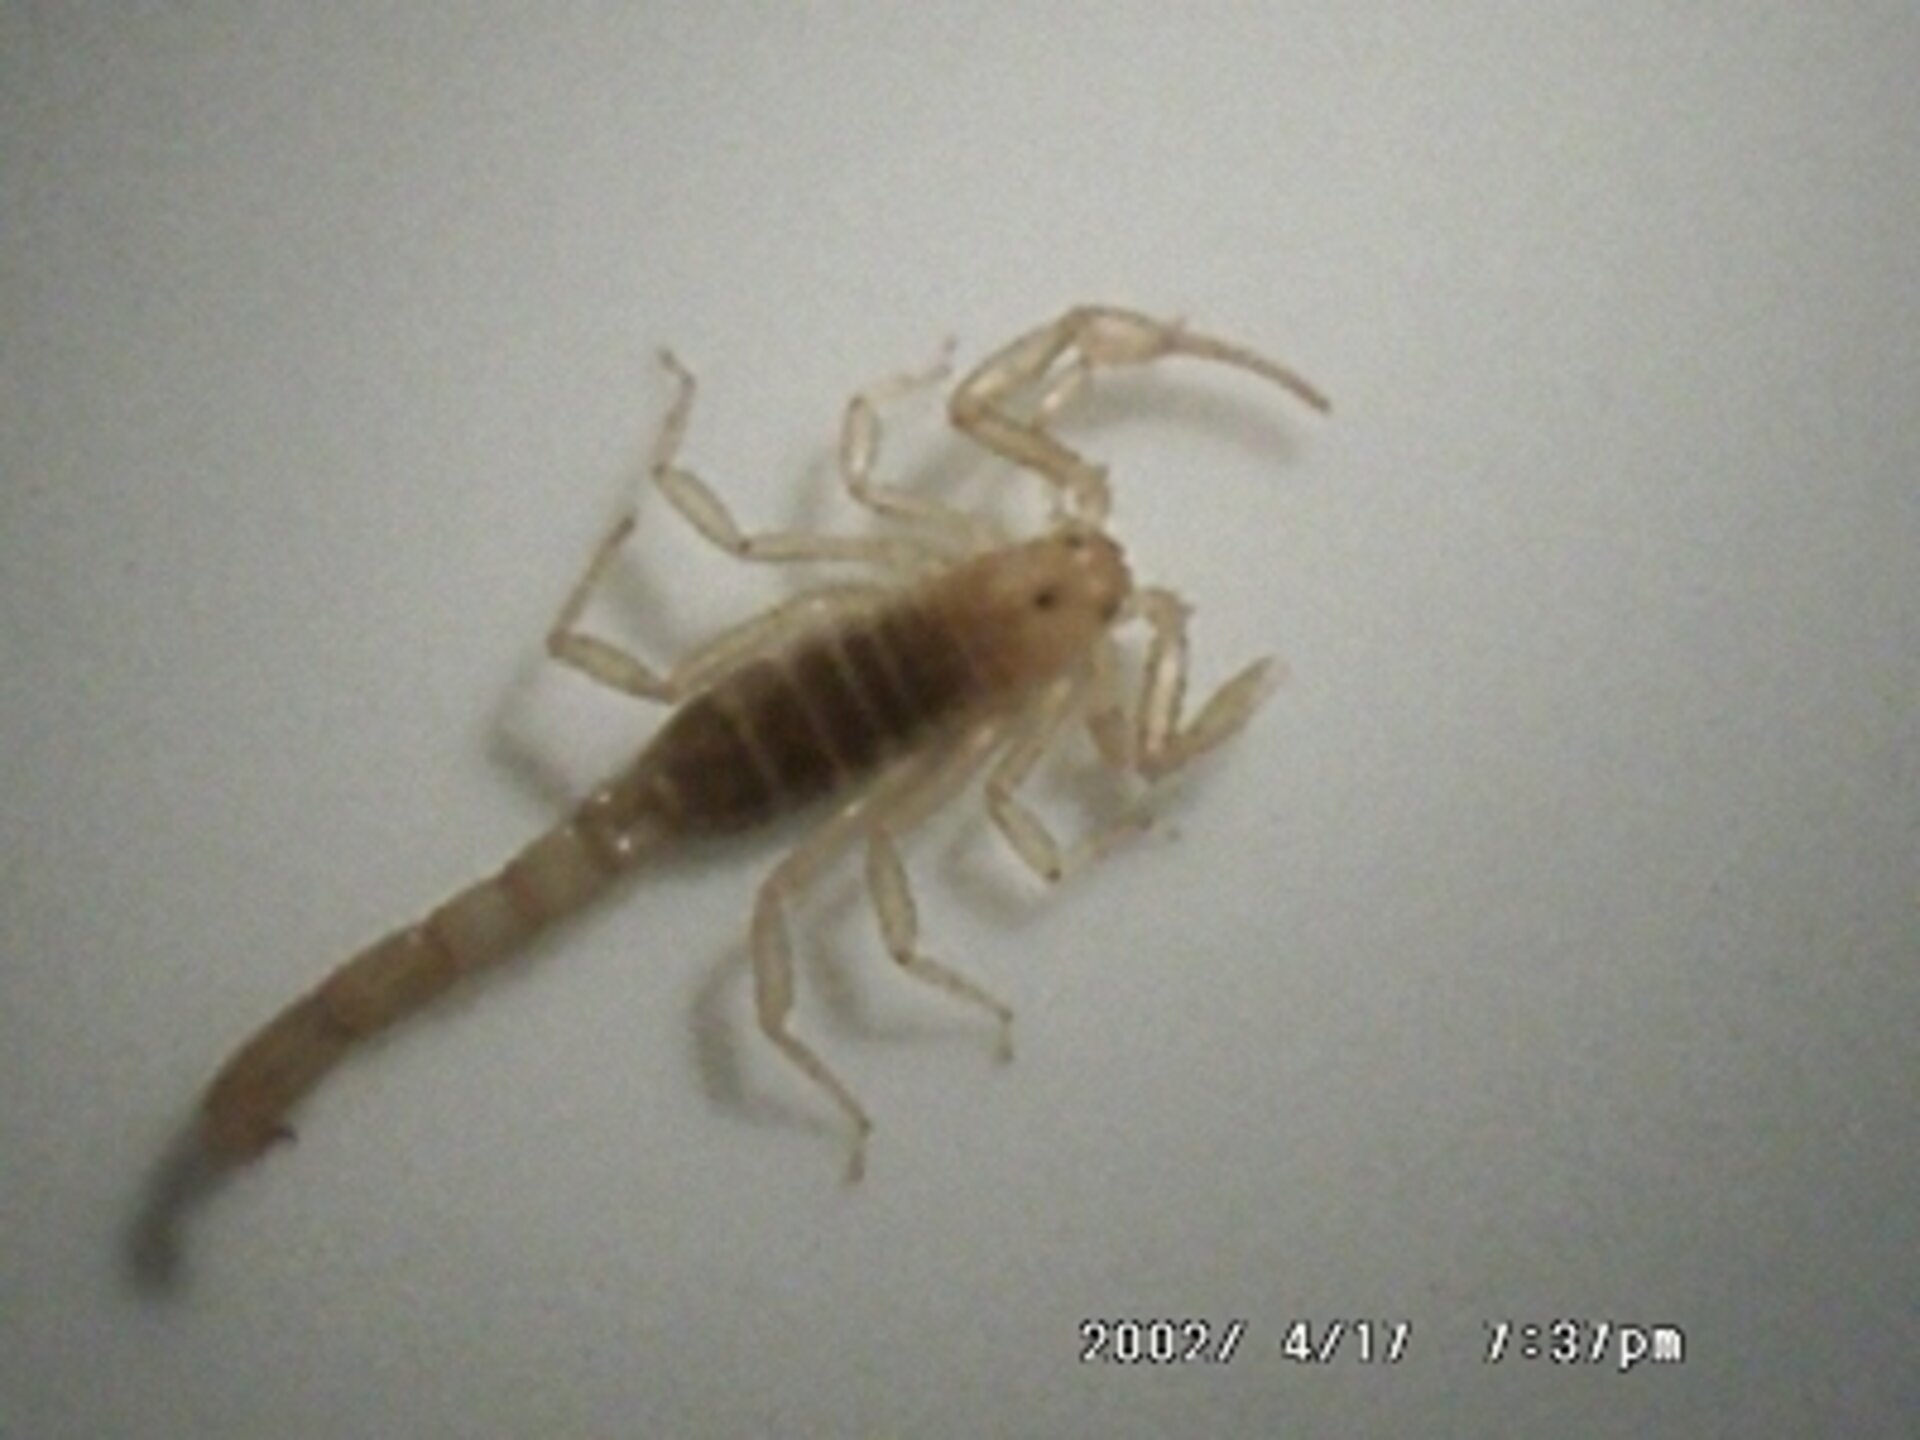 The venomous Centruroides Exilicauda scorpion found by biologist Nancy Wood